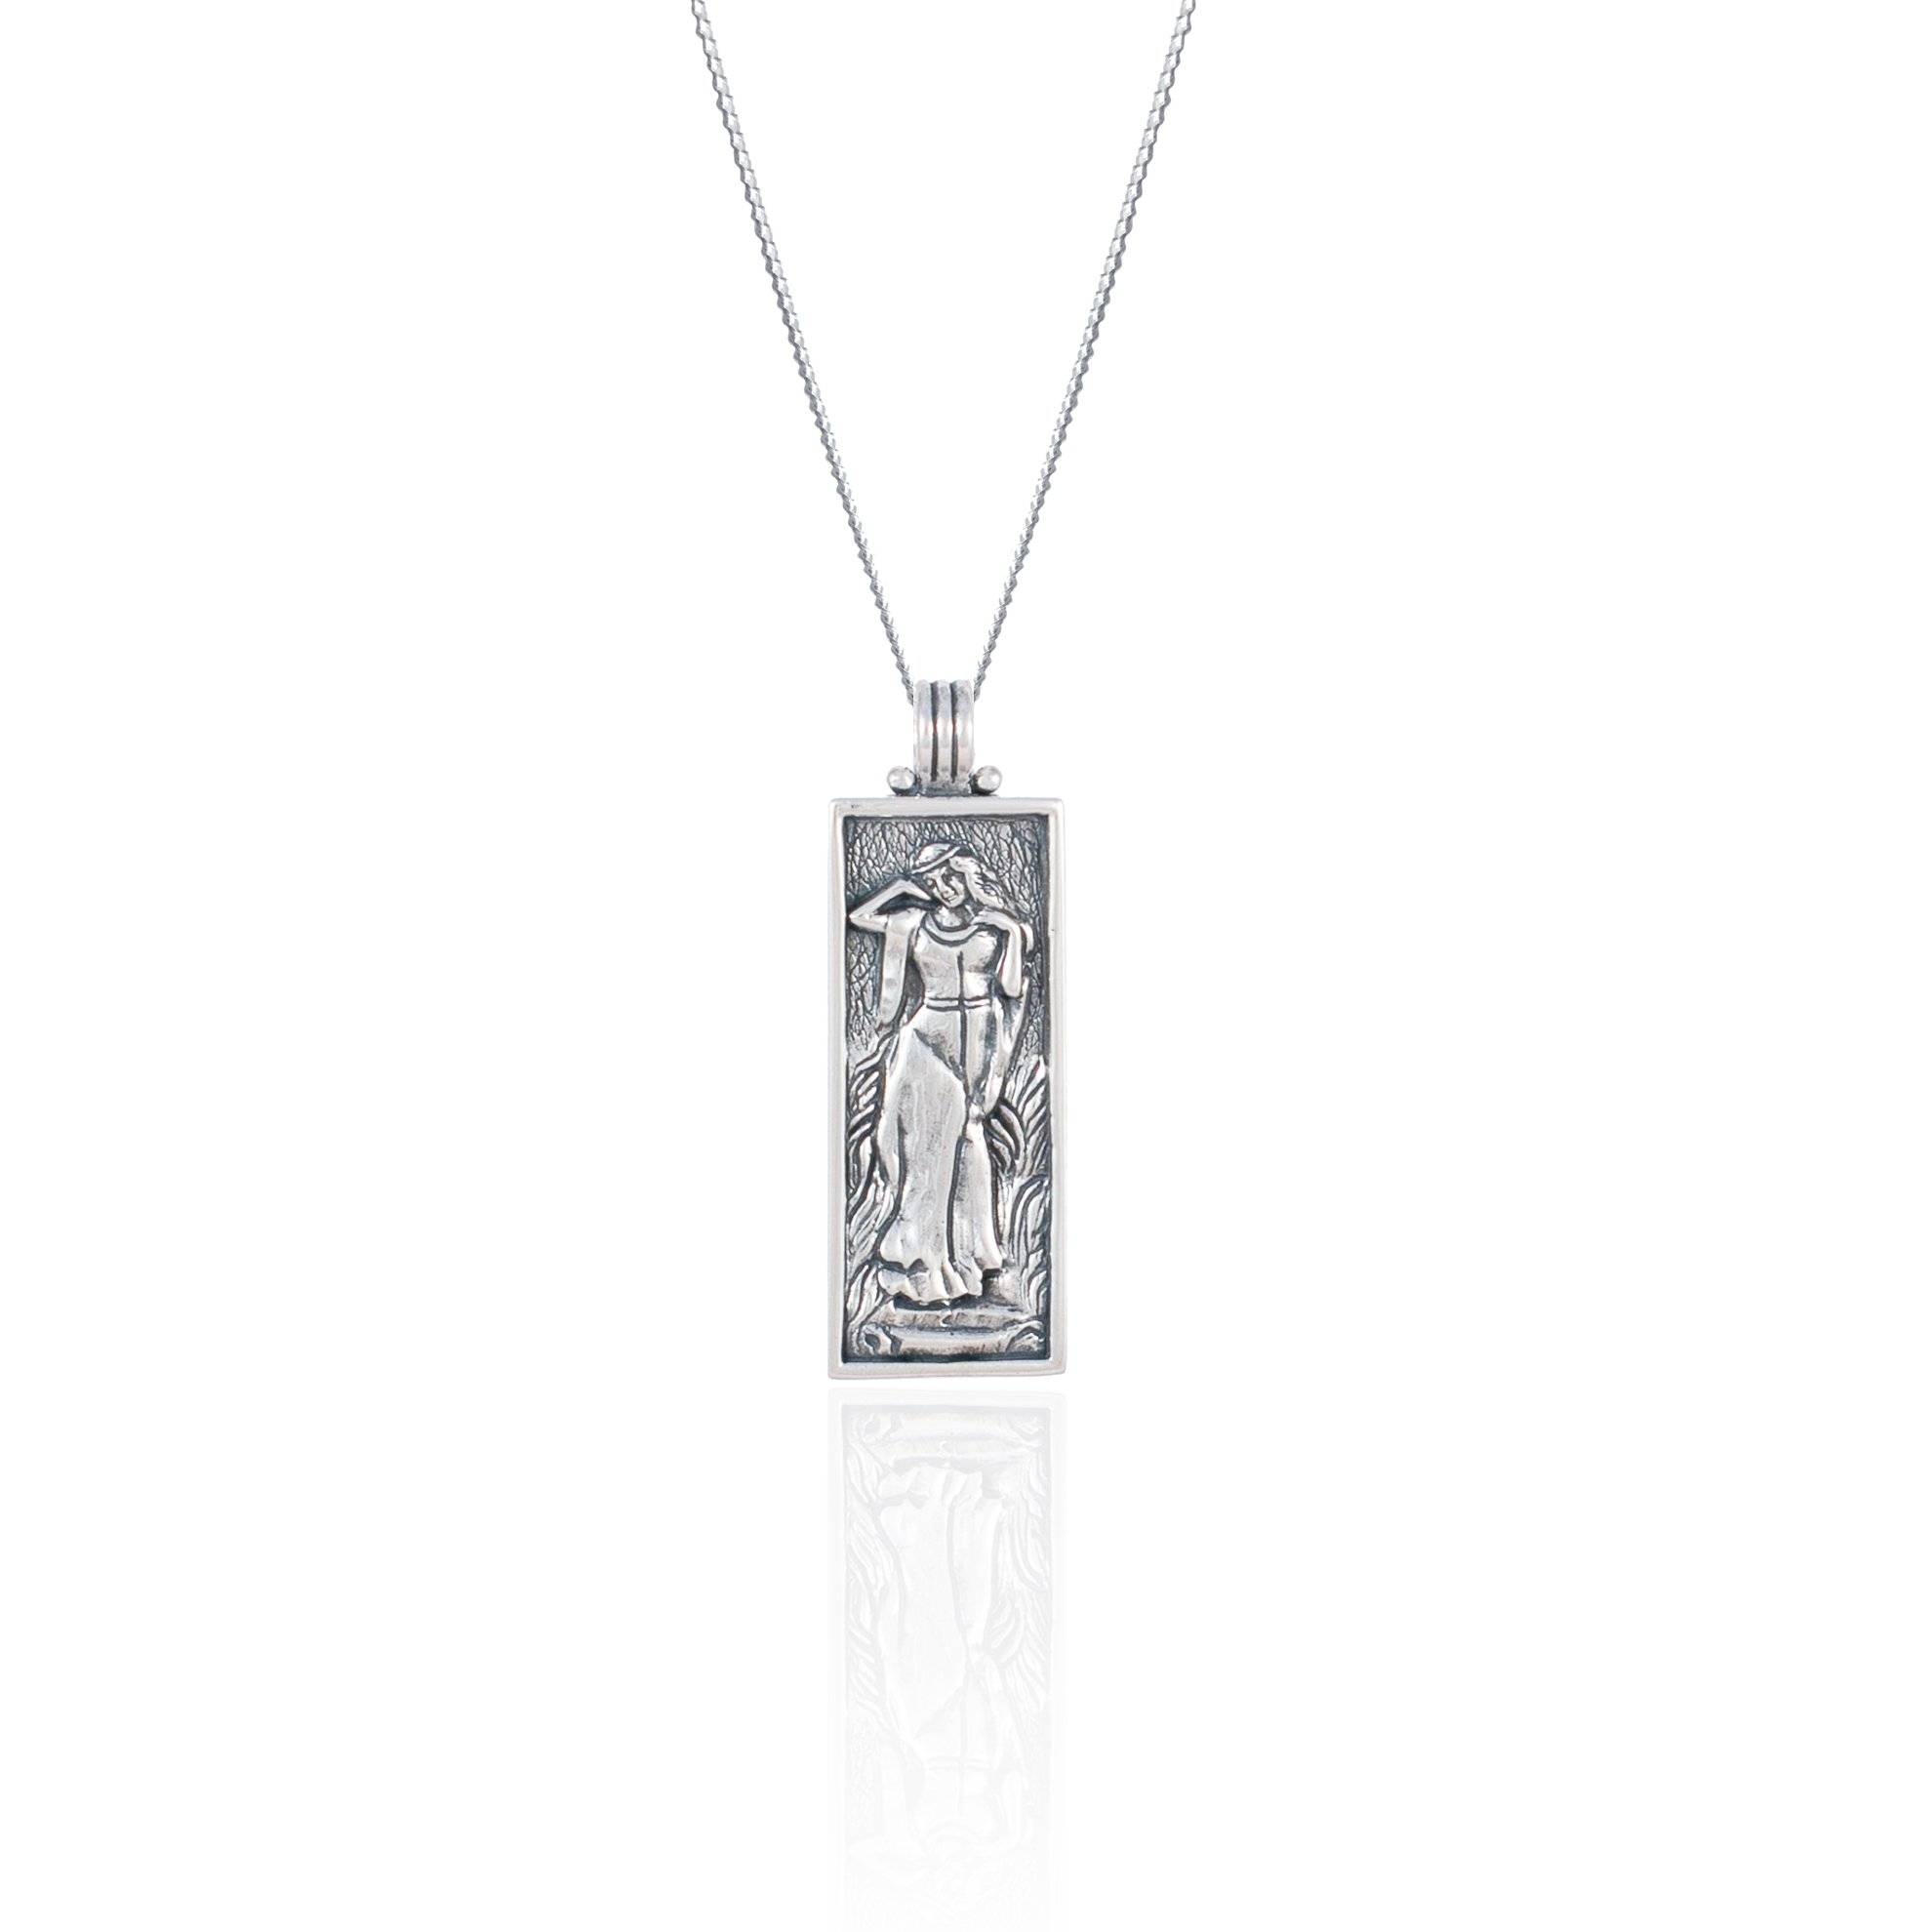 Freyja Halskette Silber - Göttin der Liebe, Schönheit & Fruchtbarkeit  Anhänger | Kettenanhänger